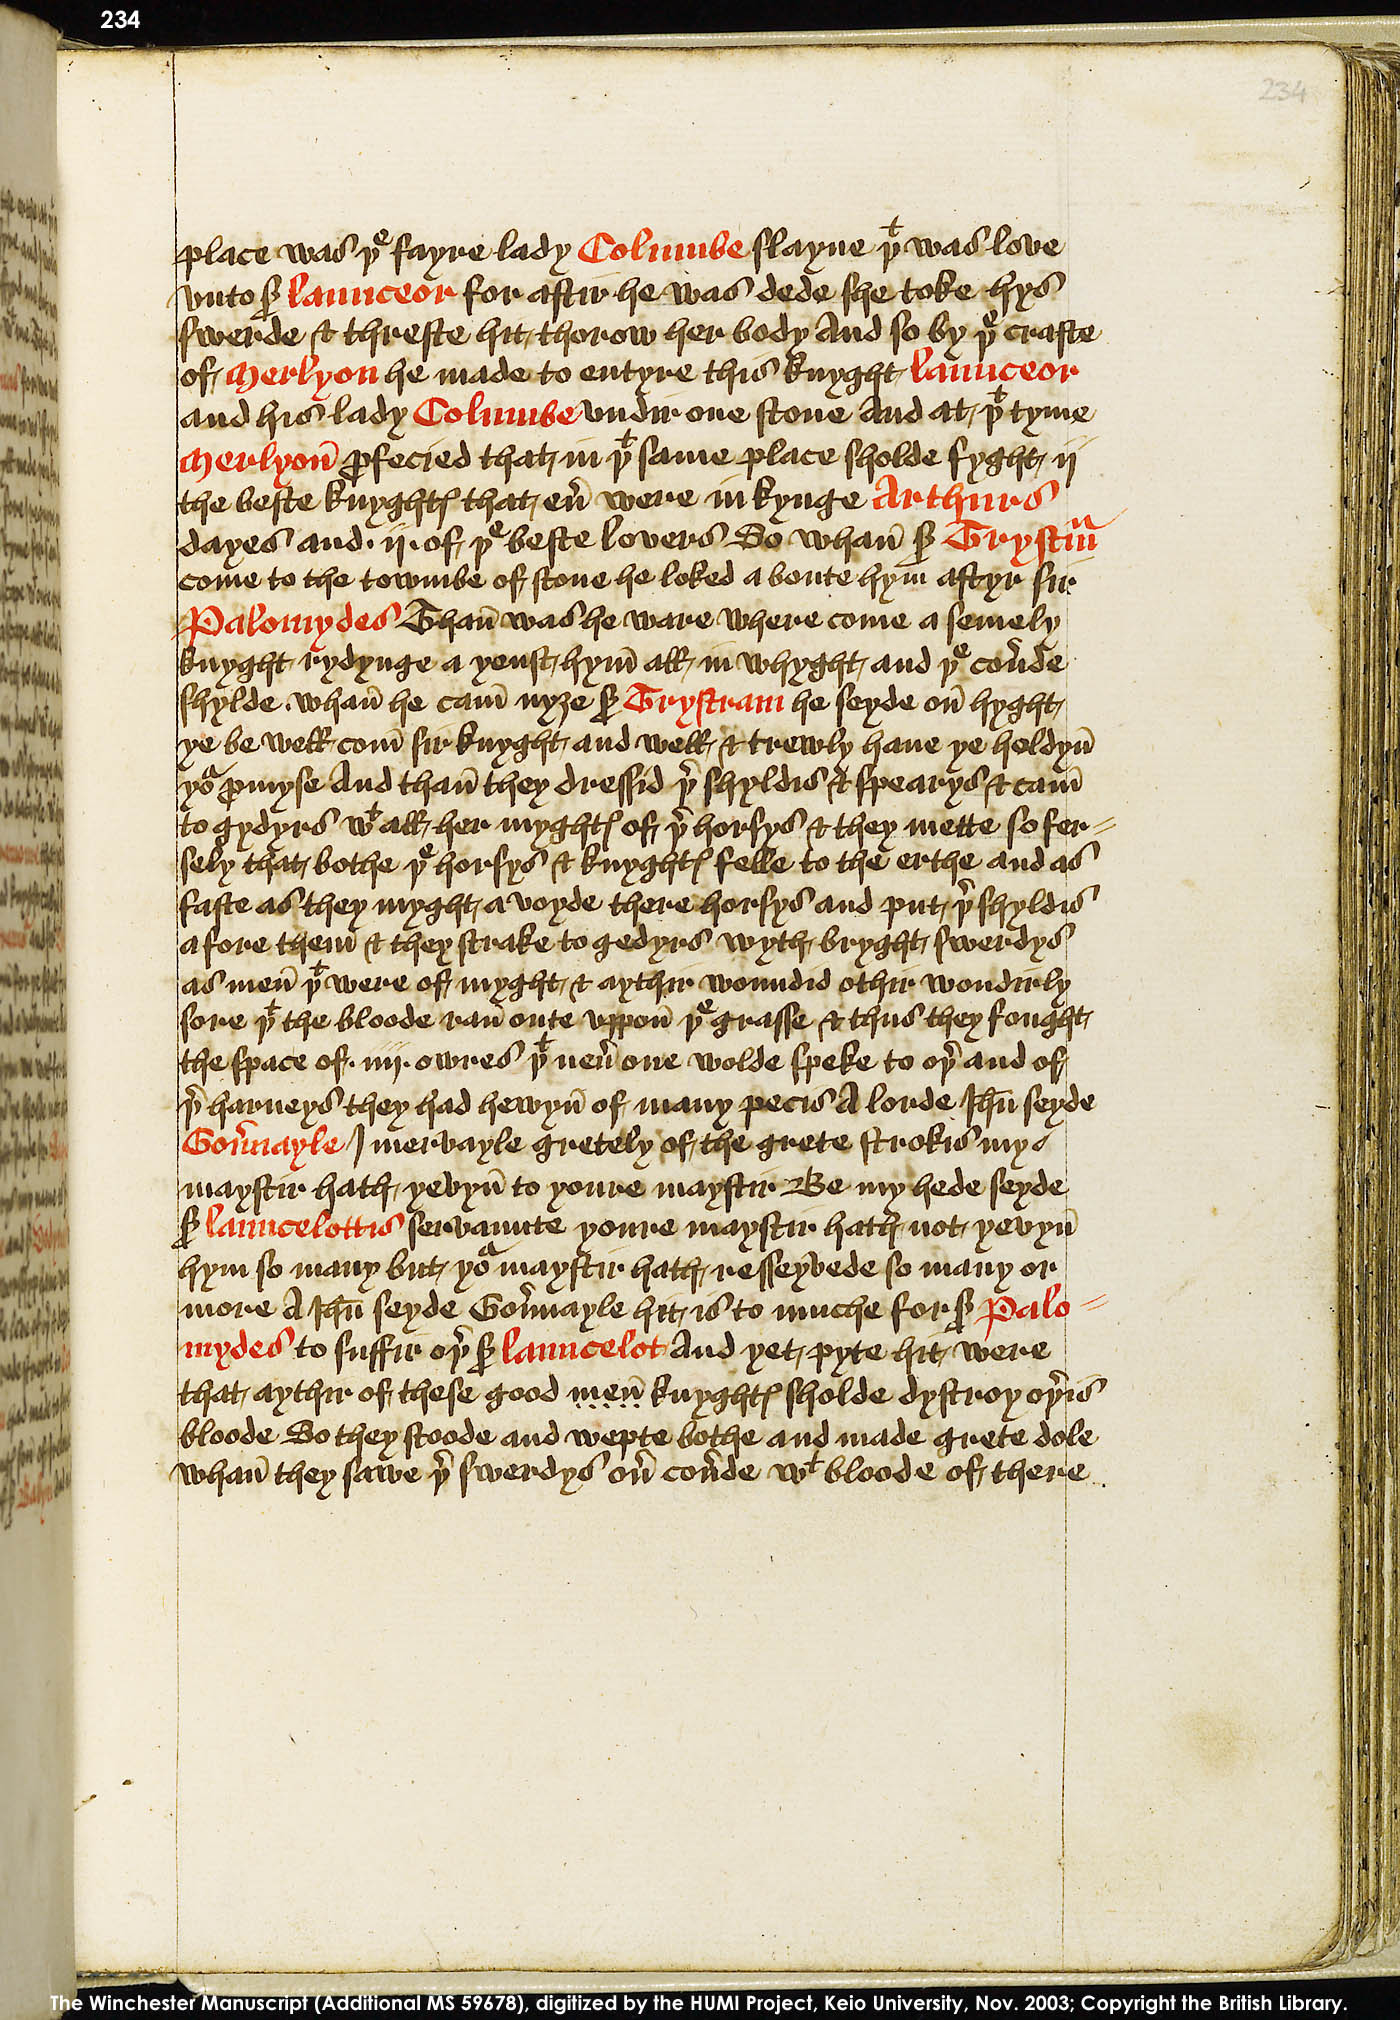 Folio 234r